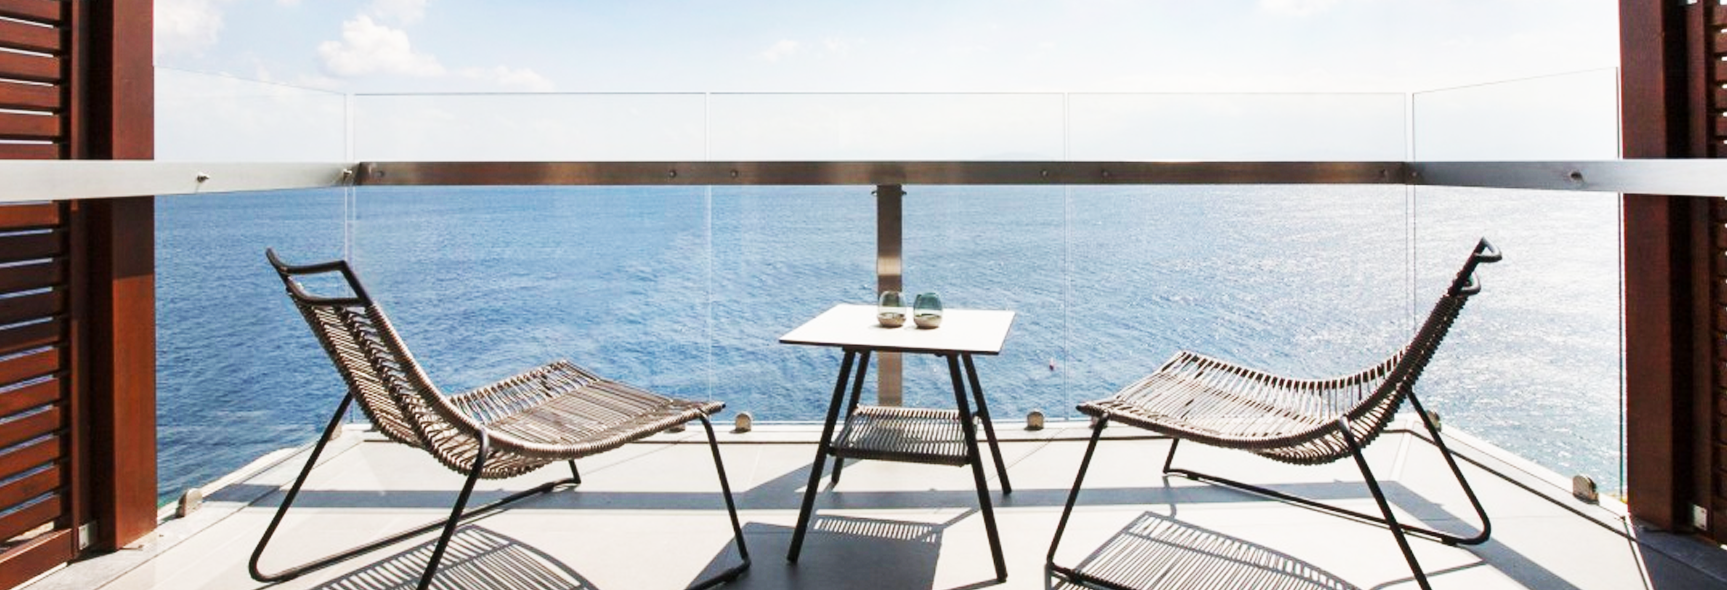 Agios Nikolaos sea view from balcony